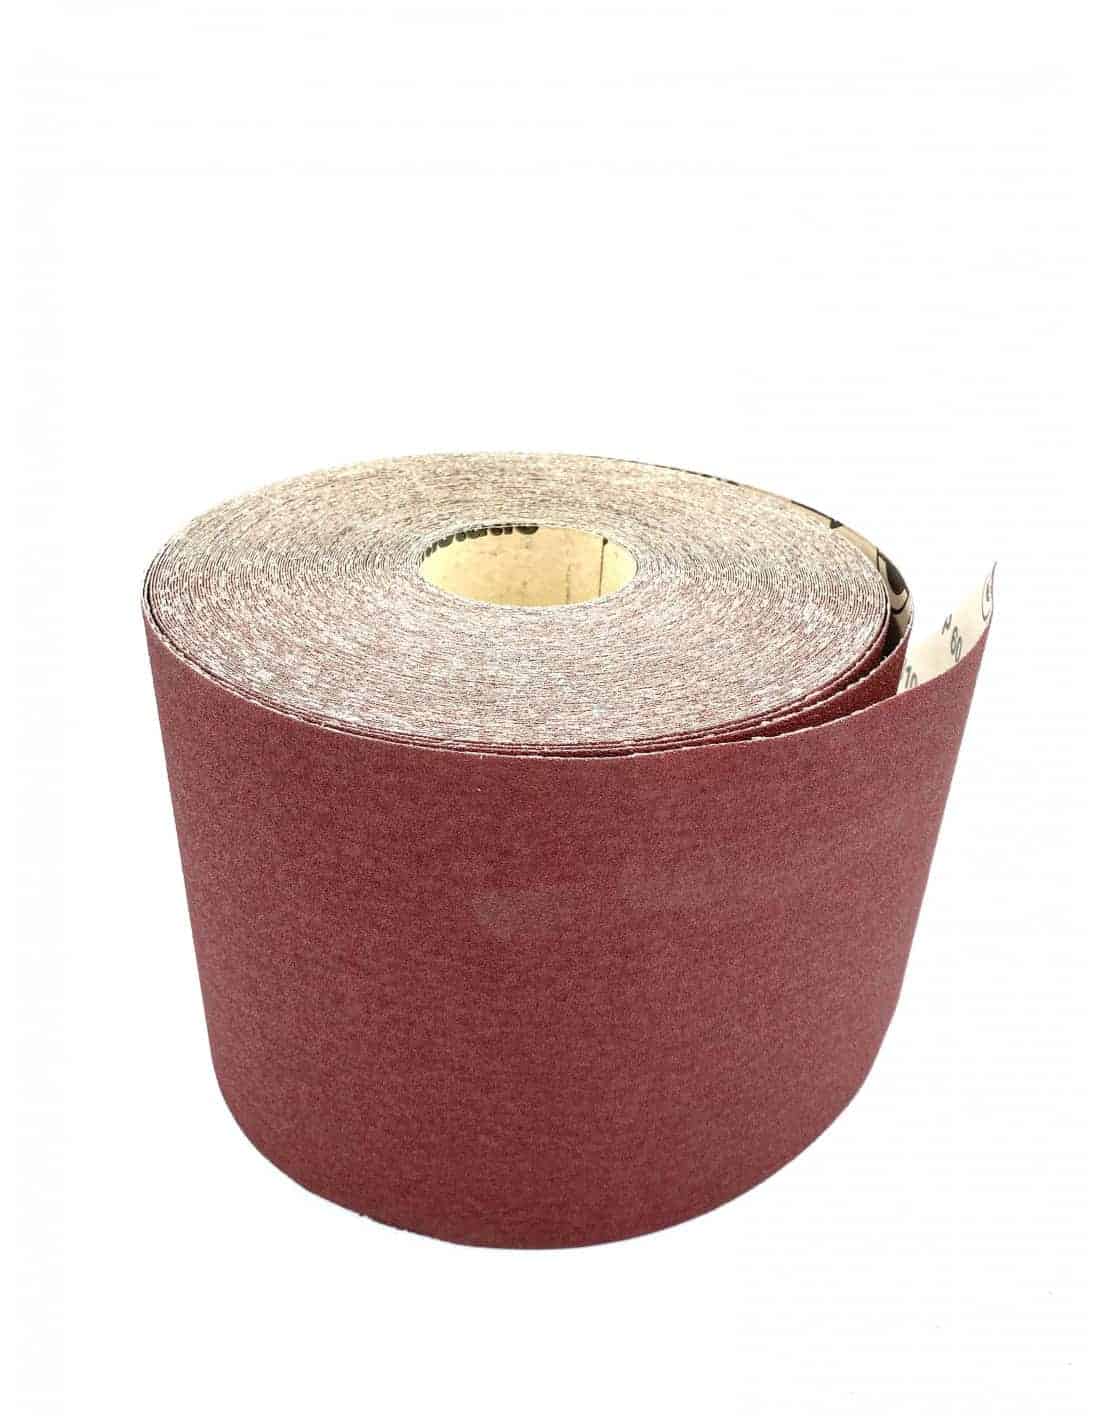 Rouleau de papier abrasif - 100 grains, moyen